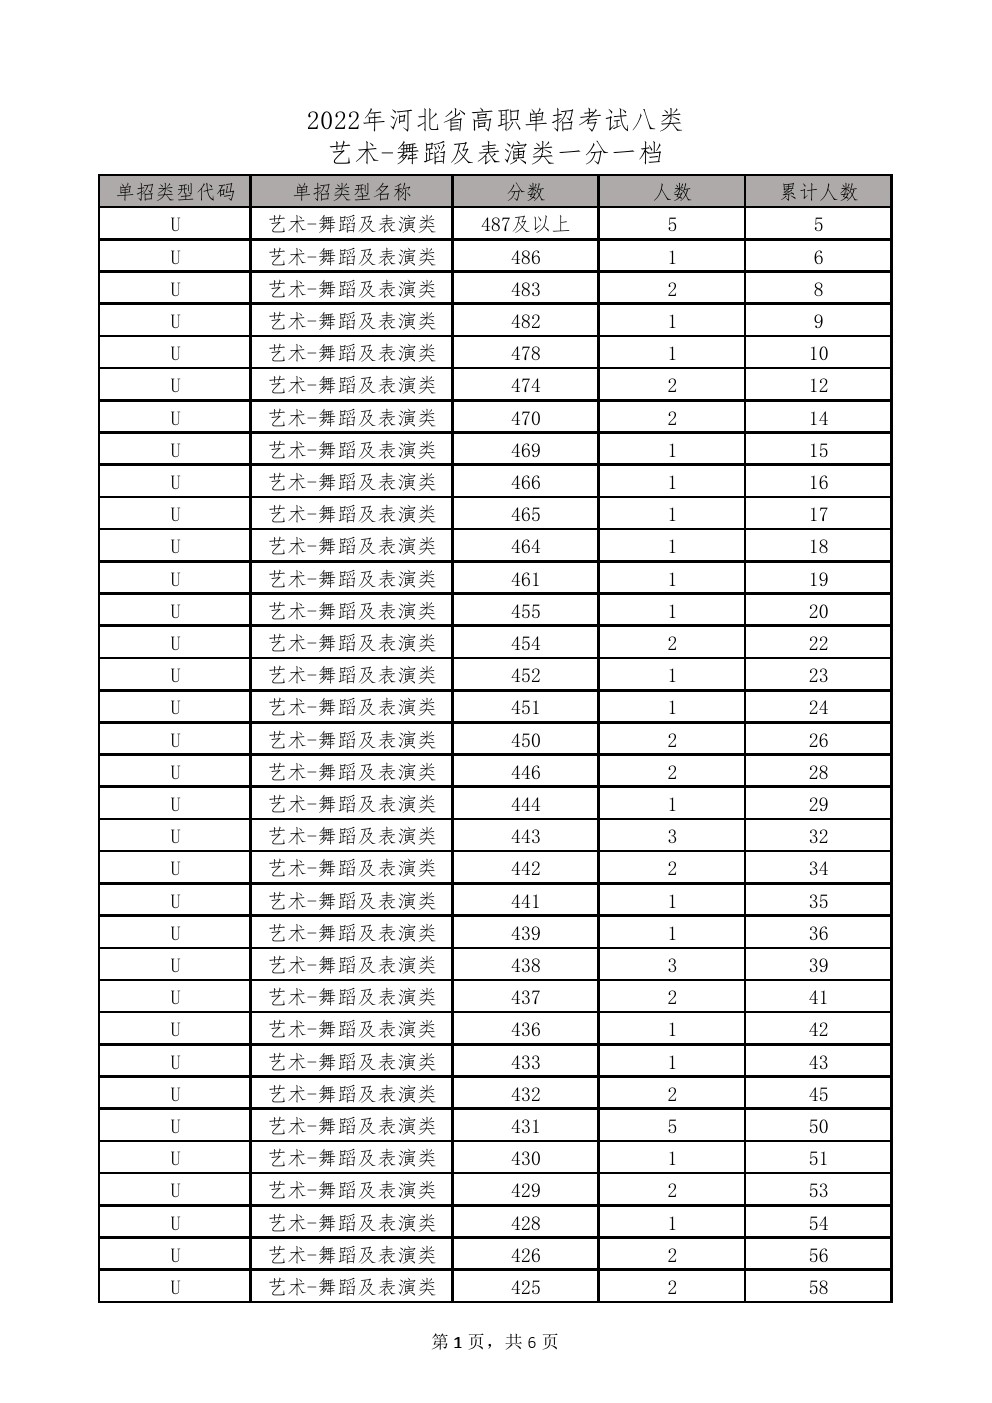 2022年河北省高职单招考试八类-舞蹈类一分一档统计表 